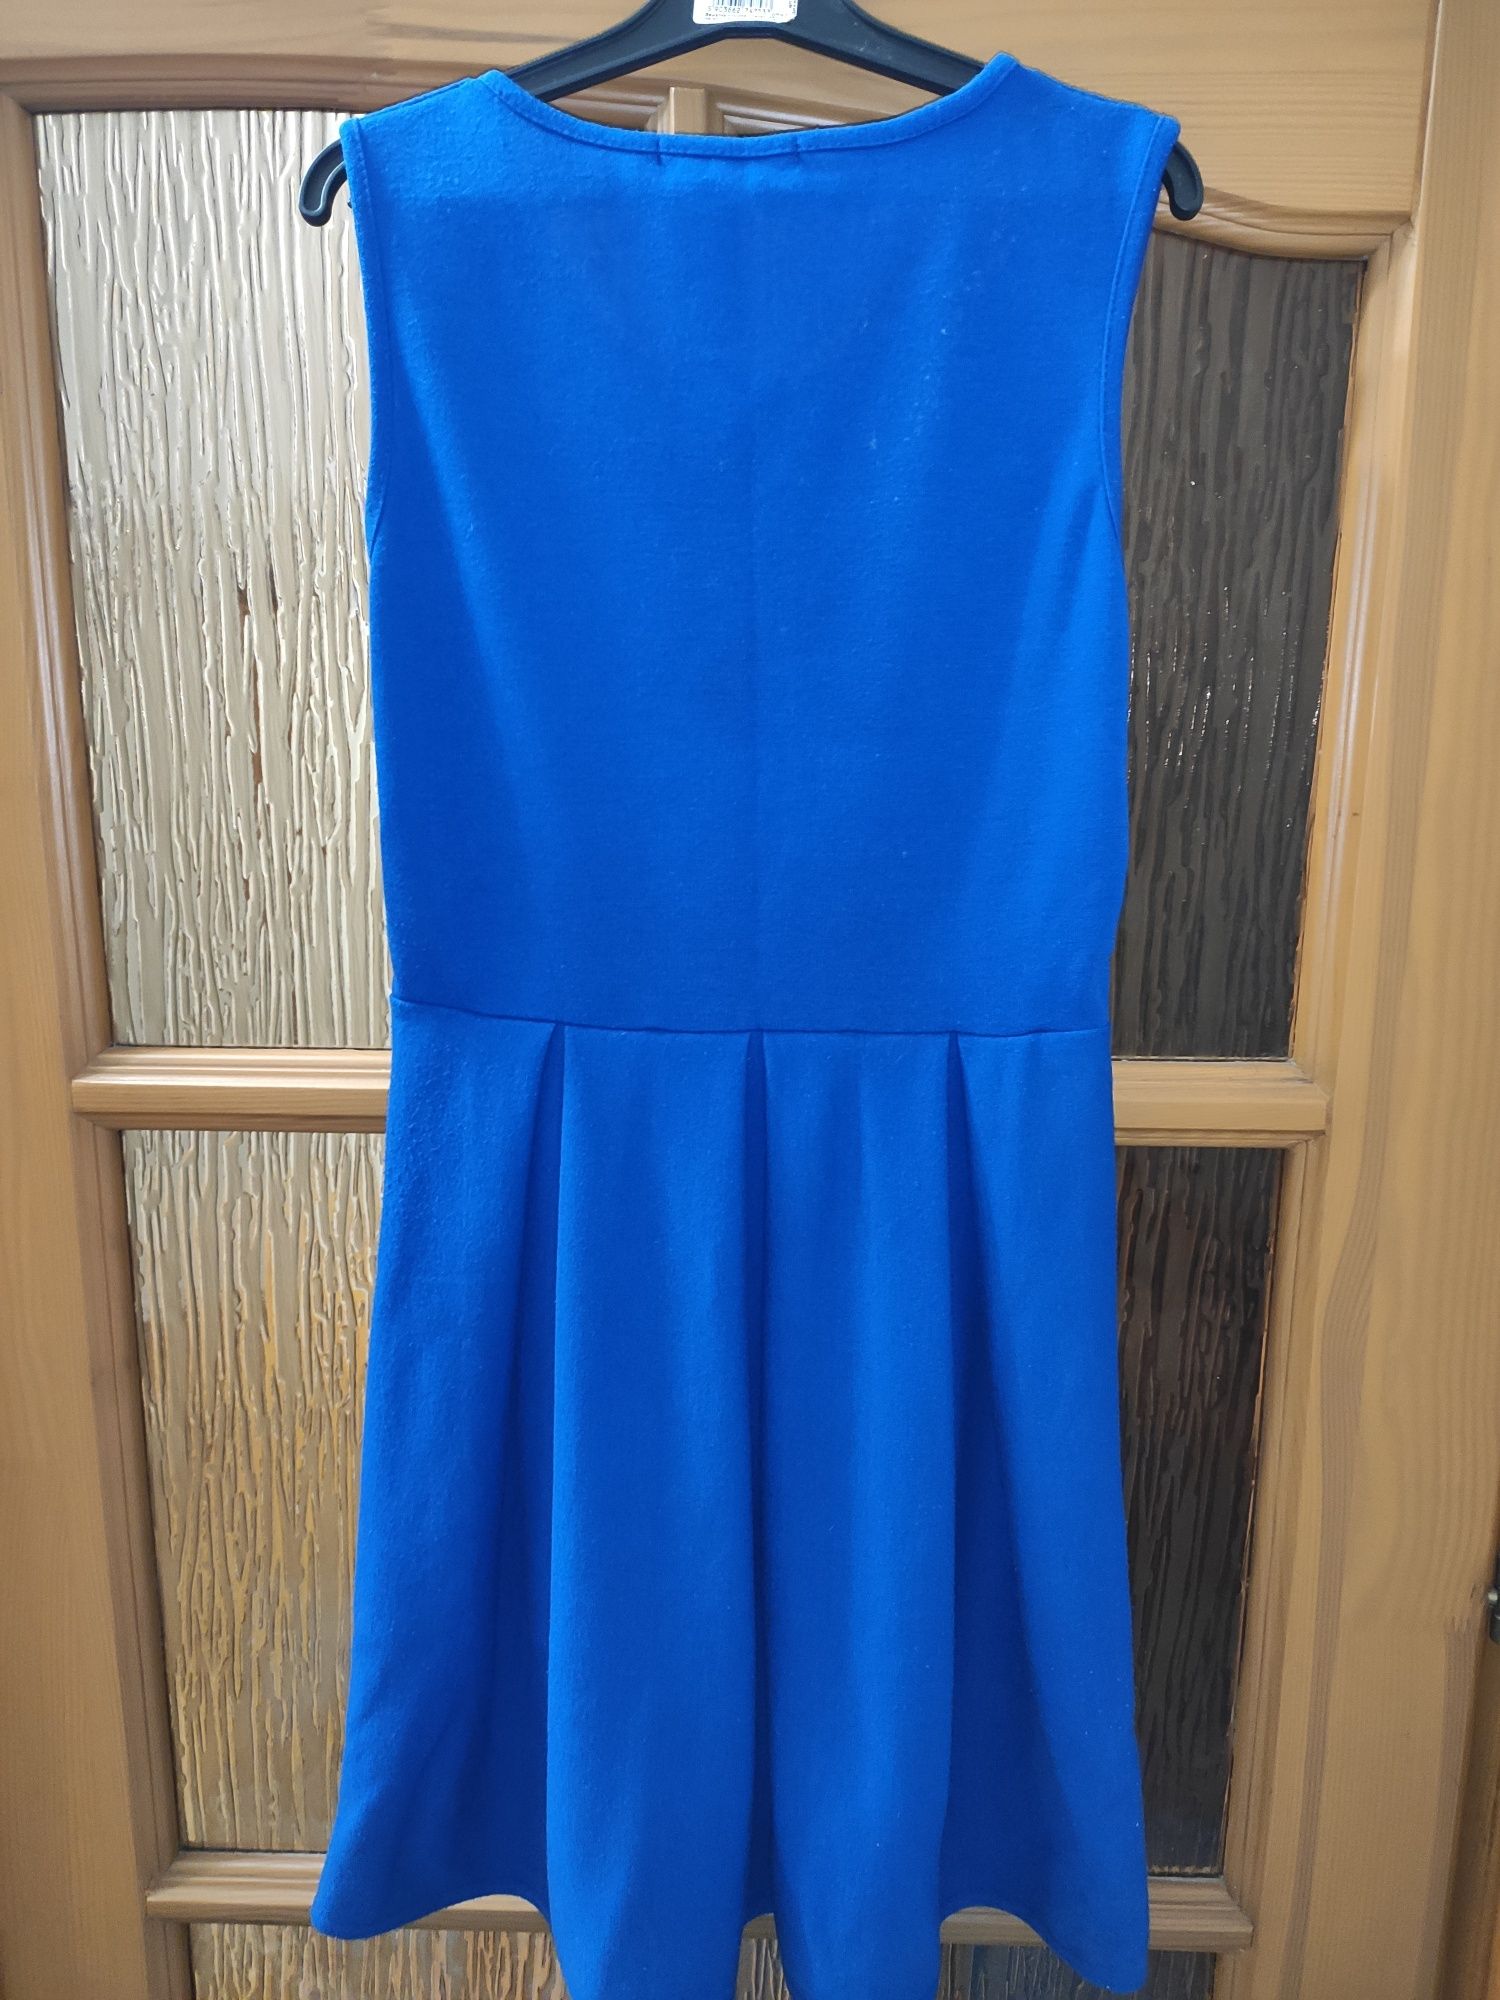 Коротка синя сукня